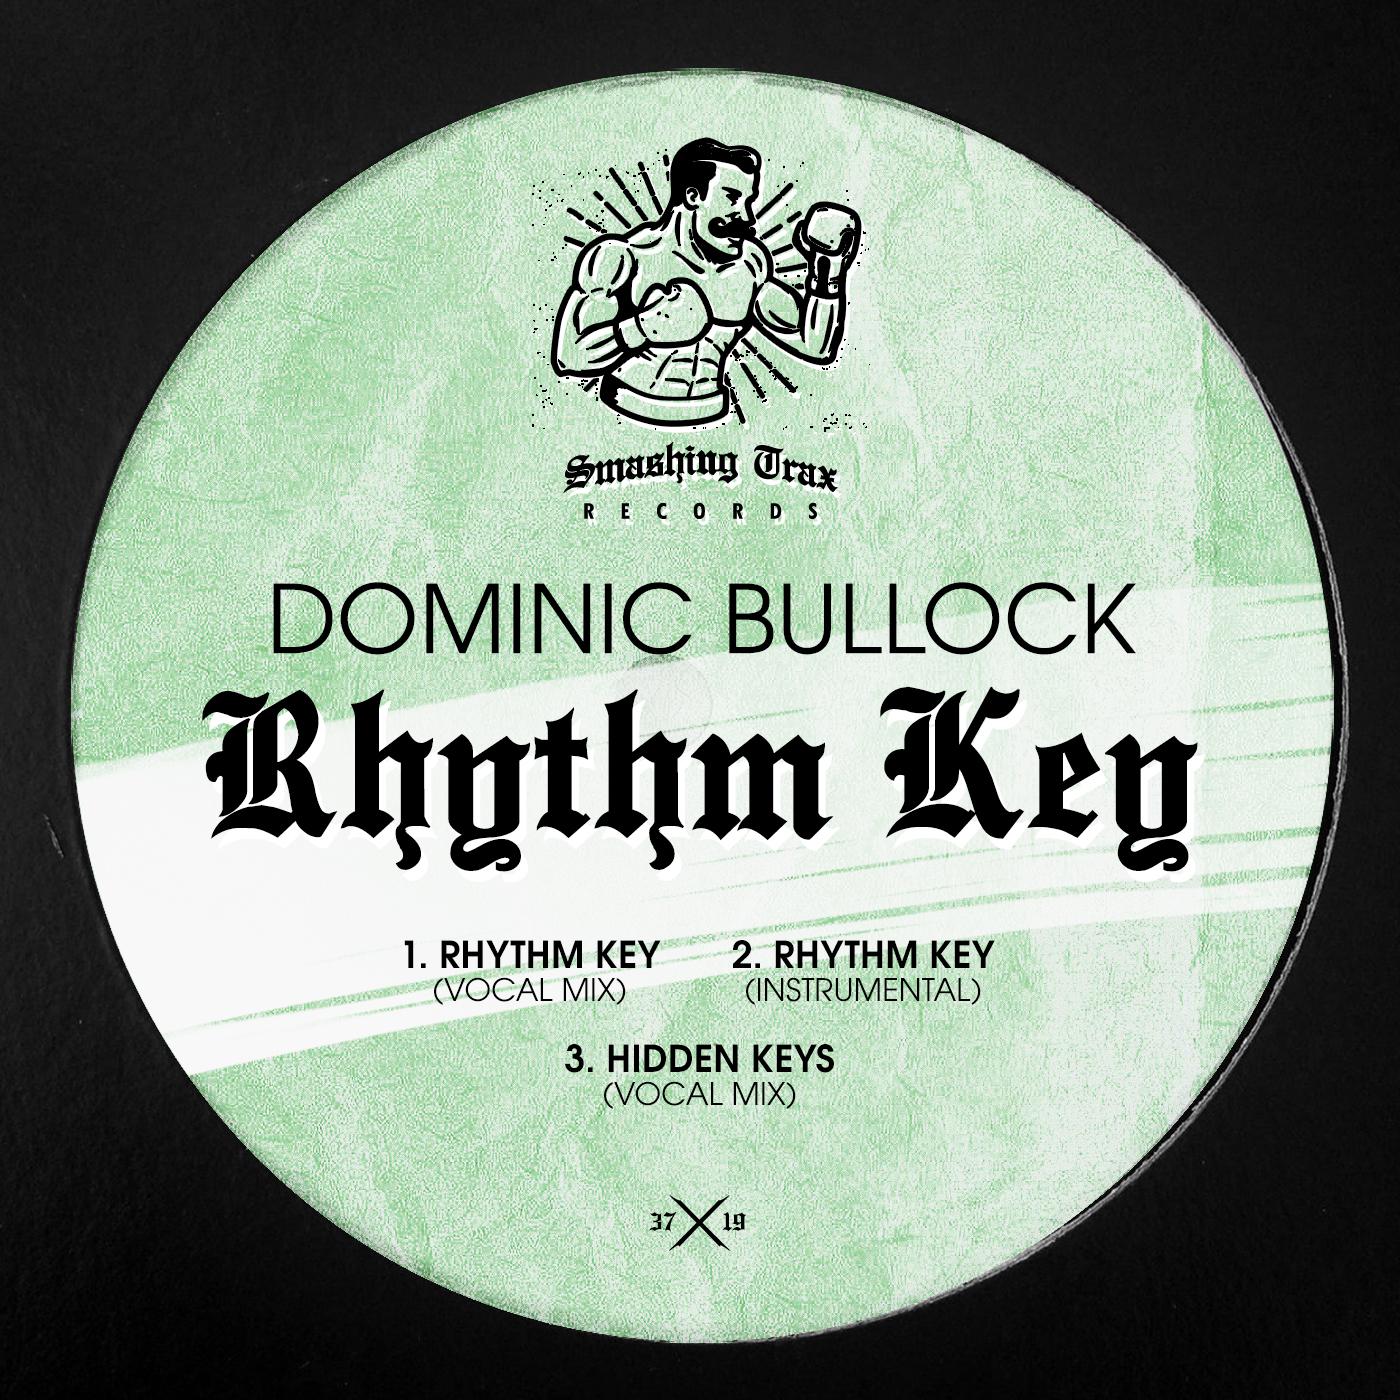 Dominic Bullock - Rhythm Key (Vocal Mix)